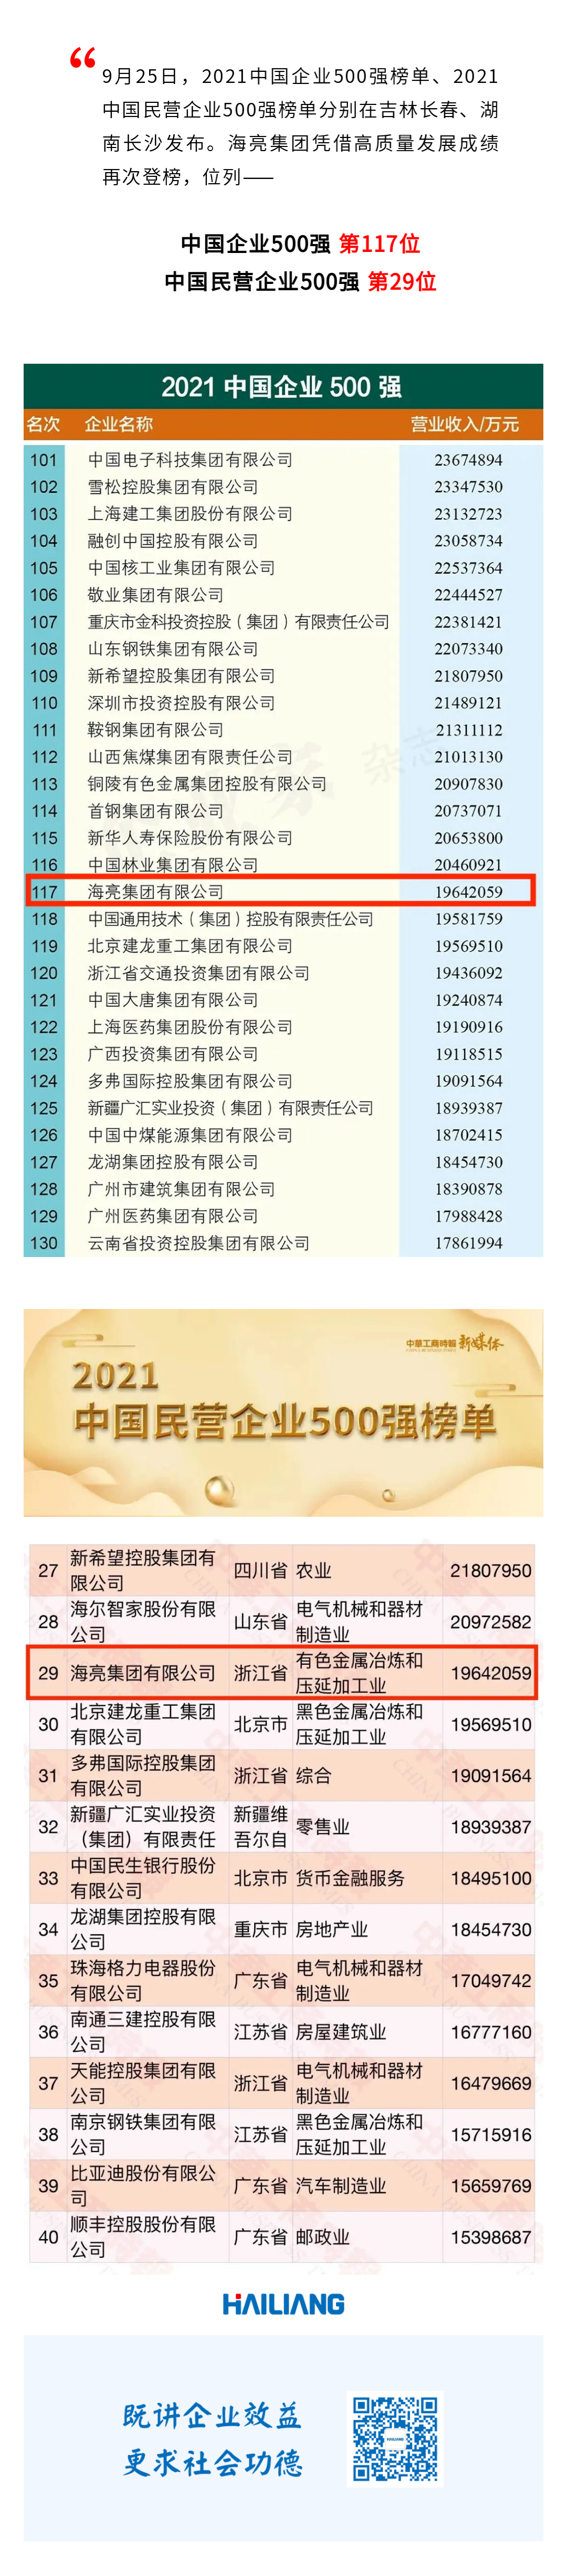 海亮集團位列中國企業500強第117位，中國民營企業500強第29位